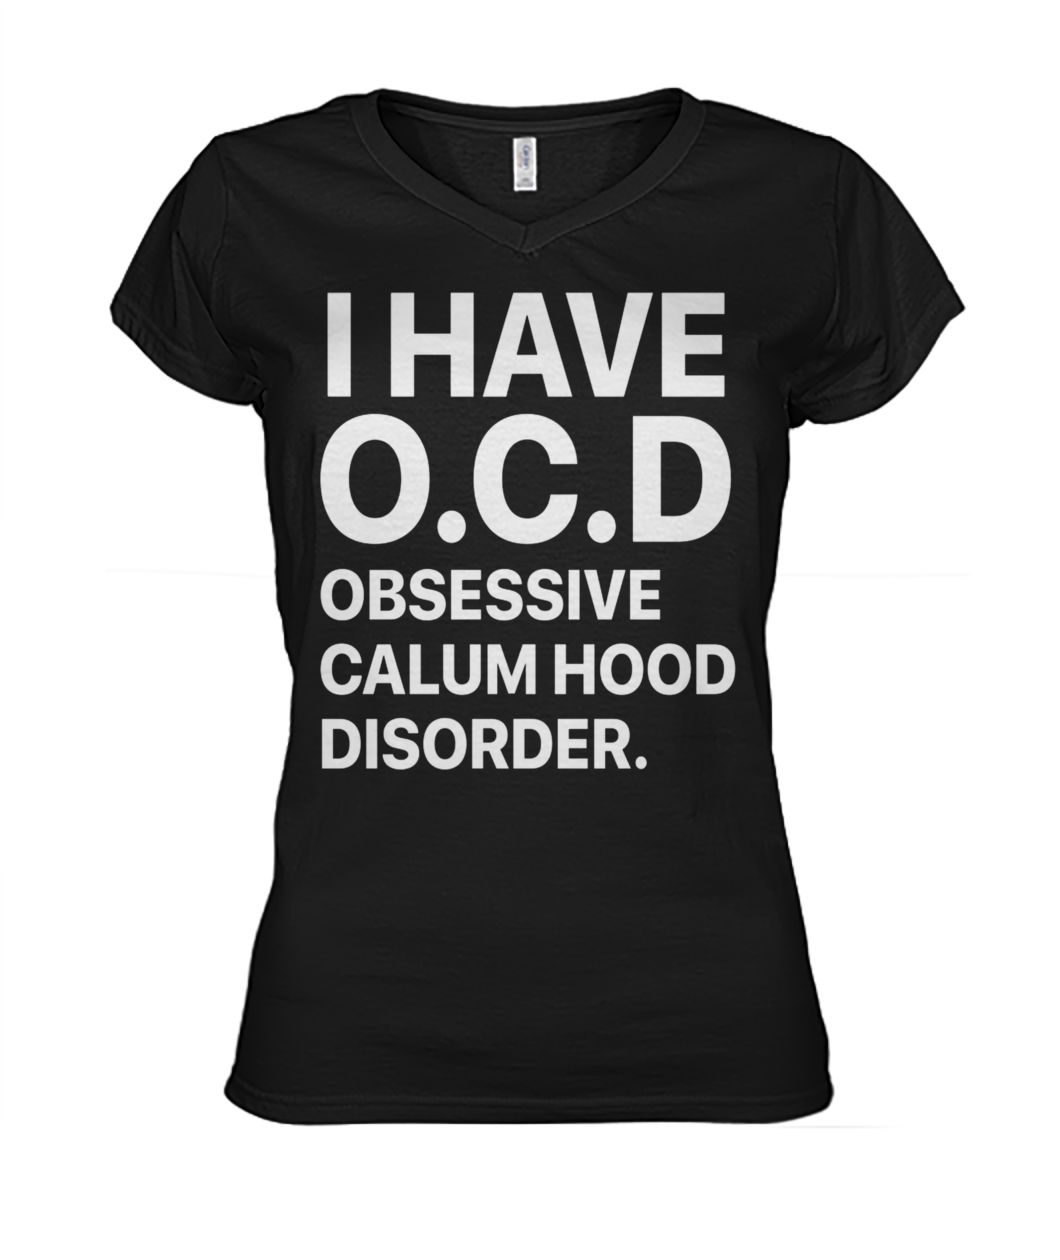 I have ocd obsessive calum hood disorder women's v-neck